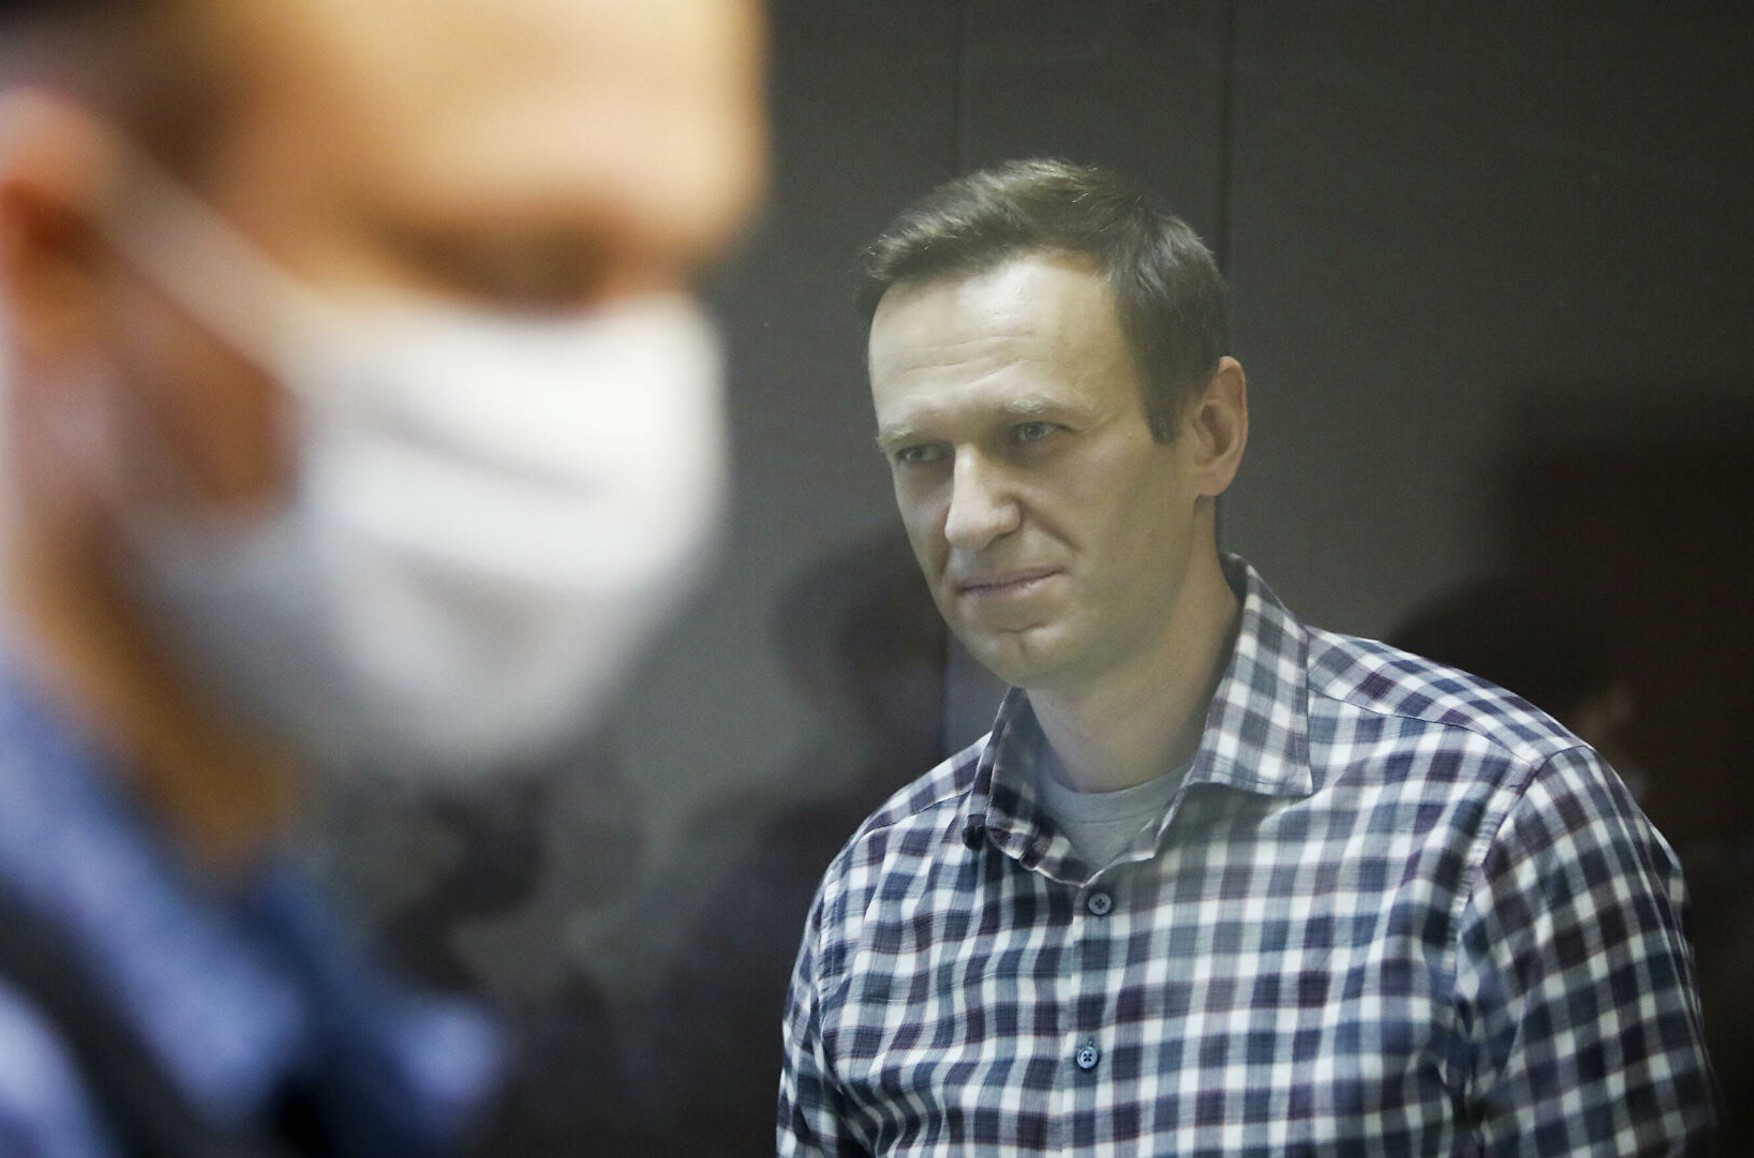 Члени ОНК відвідали в колонії Олексія Навального, щоб перевірити інформацію про погіршення його здоров'я